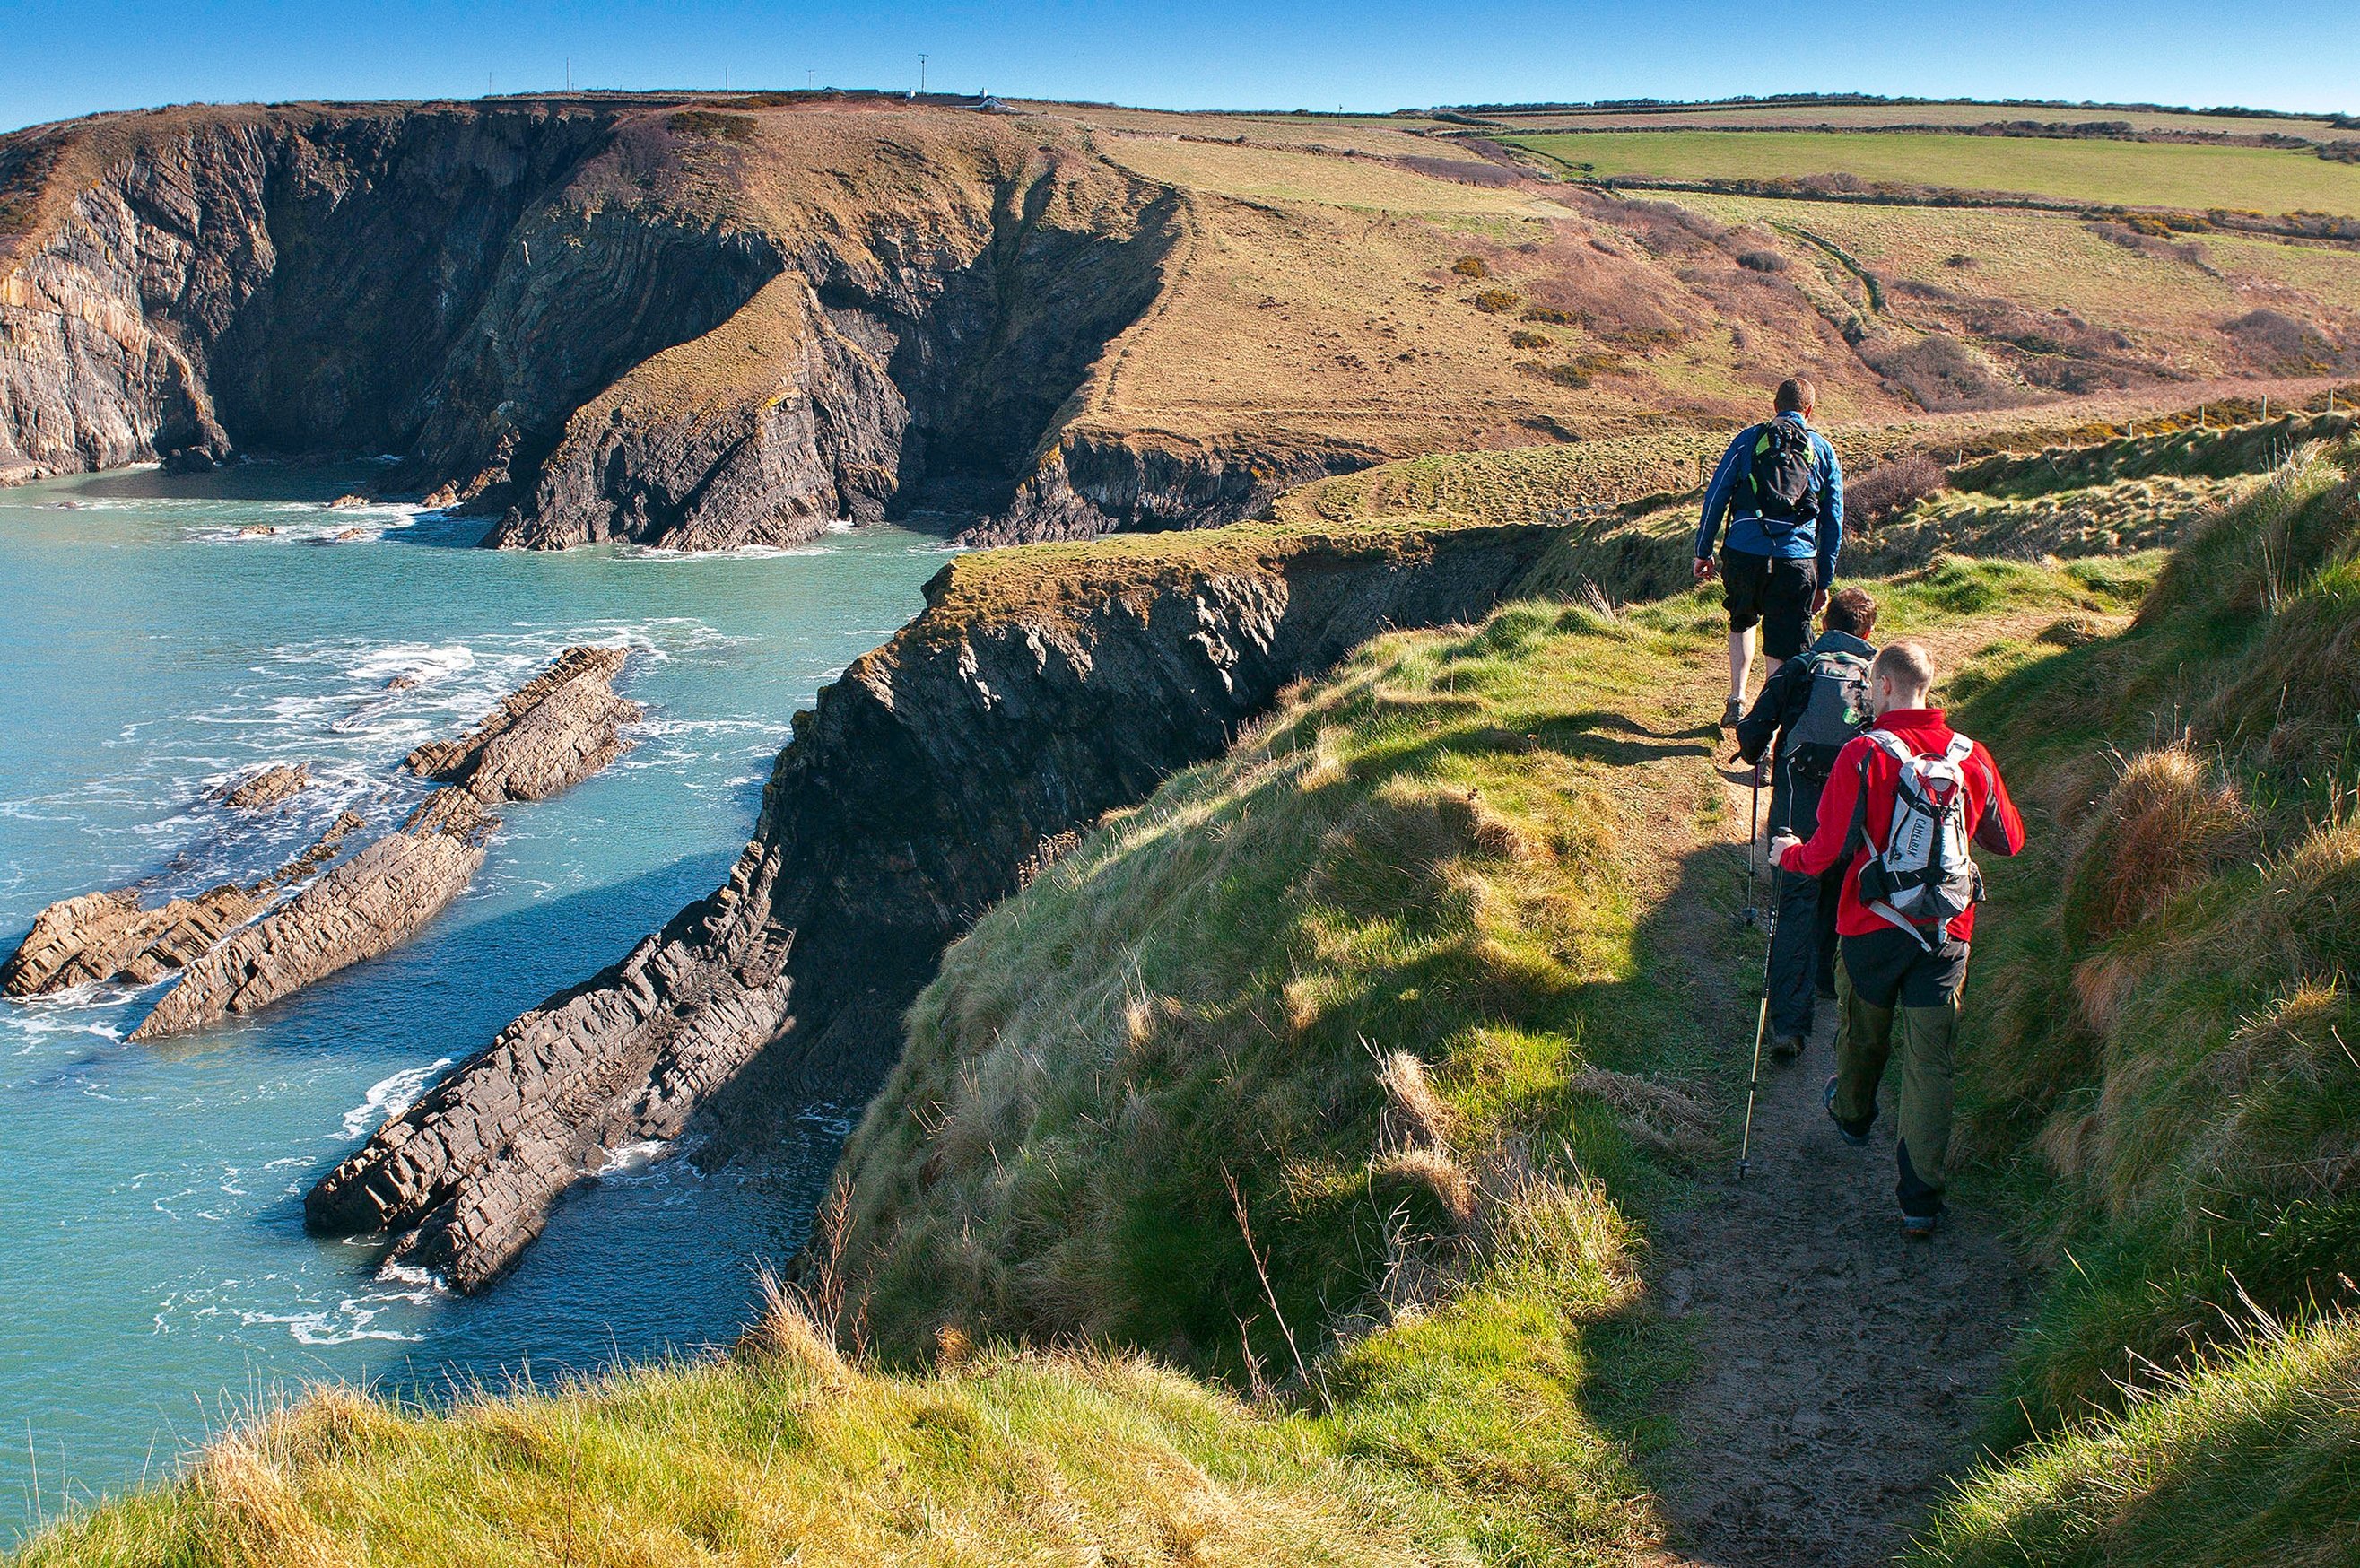 Lanskap Pembrokeshire dengan Wales Coast Path-nya telah menjadi sangat populer bagi pejalan kaki sejak situs tersebut digunakan sebagai makam Dobby di 